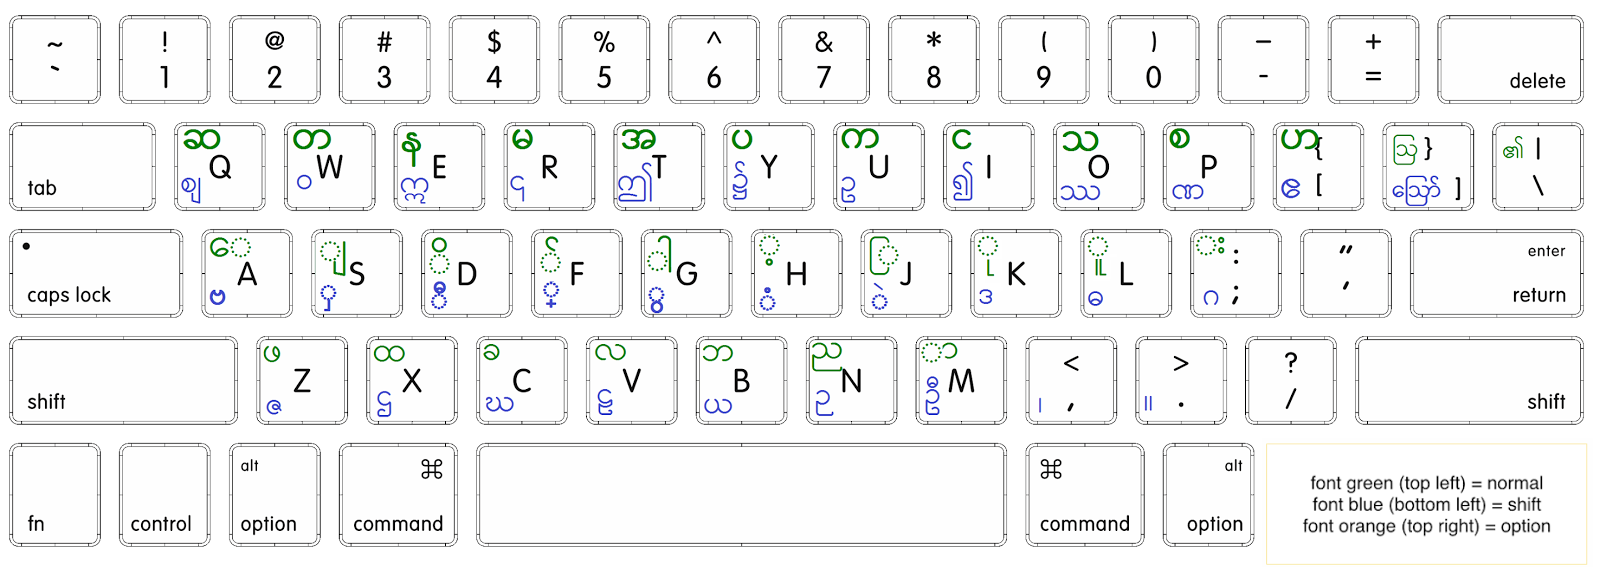 zawgyi keyboard for mac